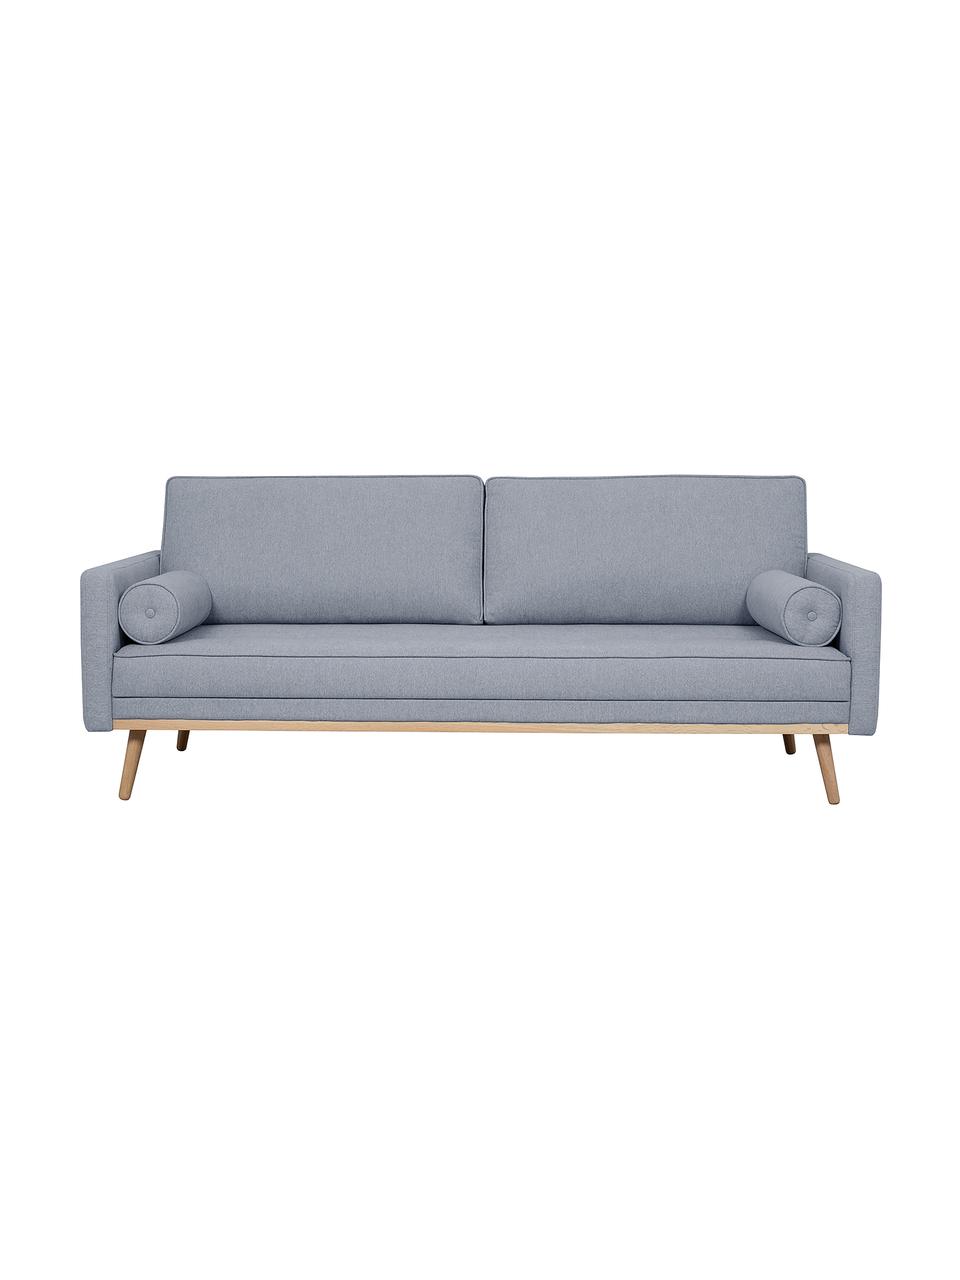 Sofa z nogami z drewna dębowego Saint (3-osobowa), Tapicerka: poliester Dzięki tkaninie, Niebieskoszara tkanina, S 210 x G 93 cm